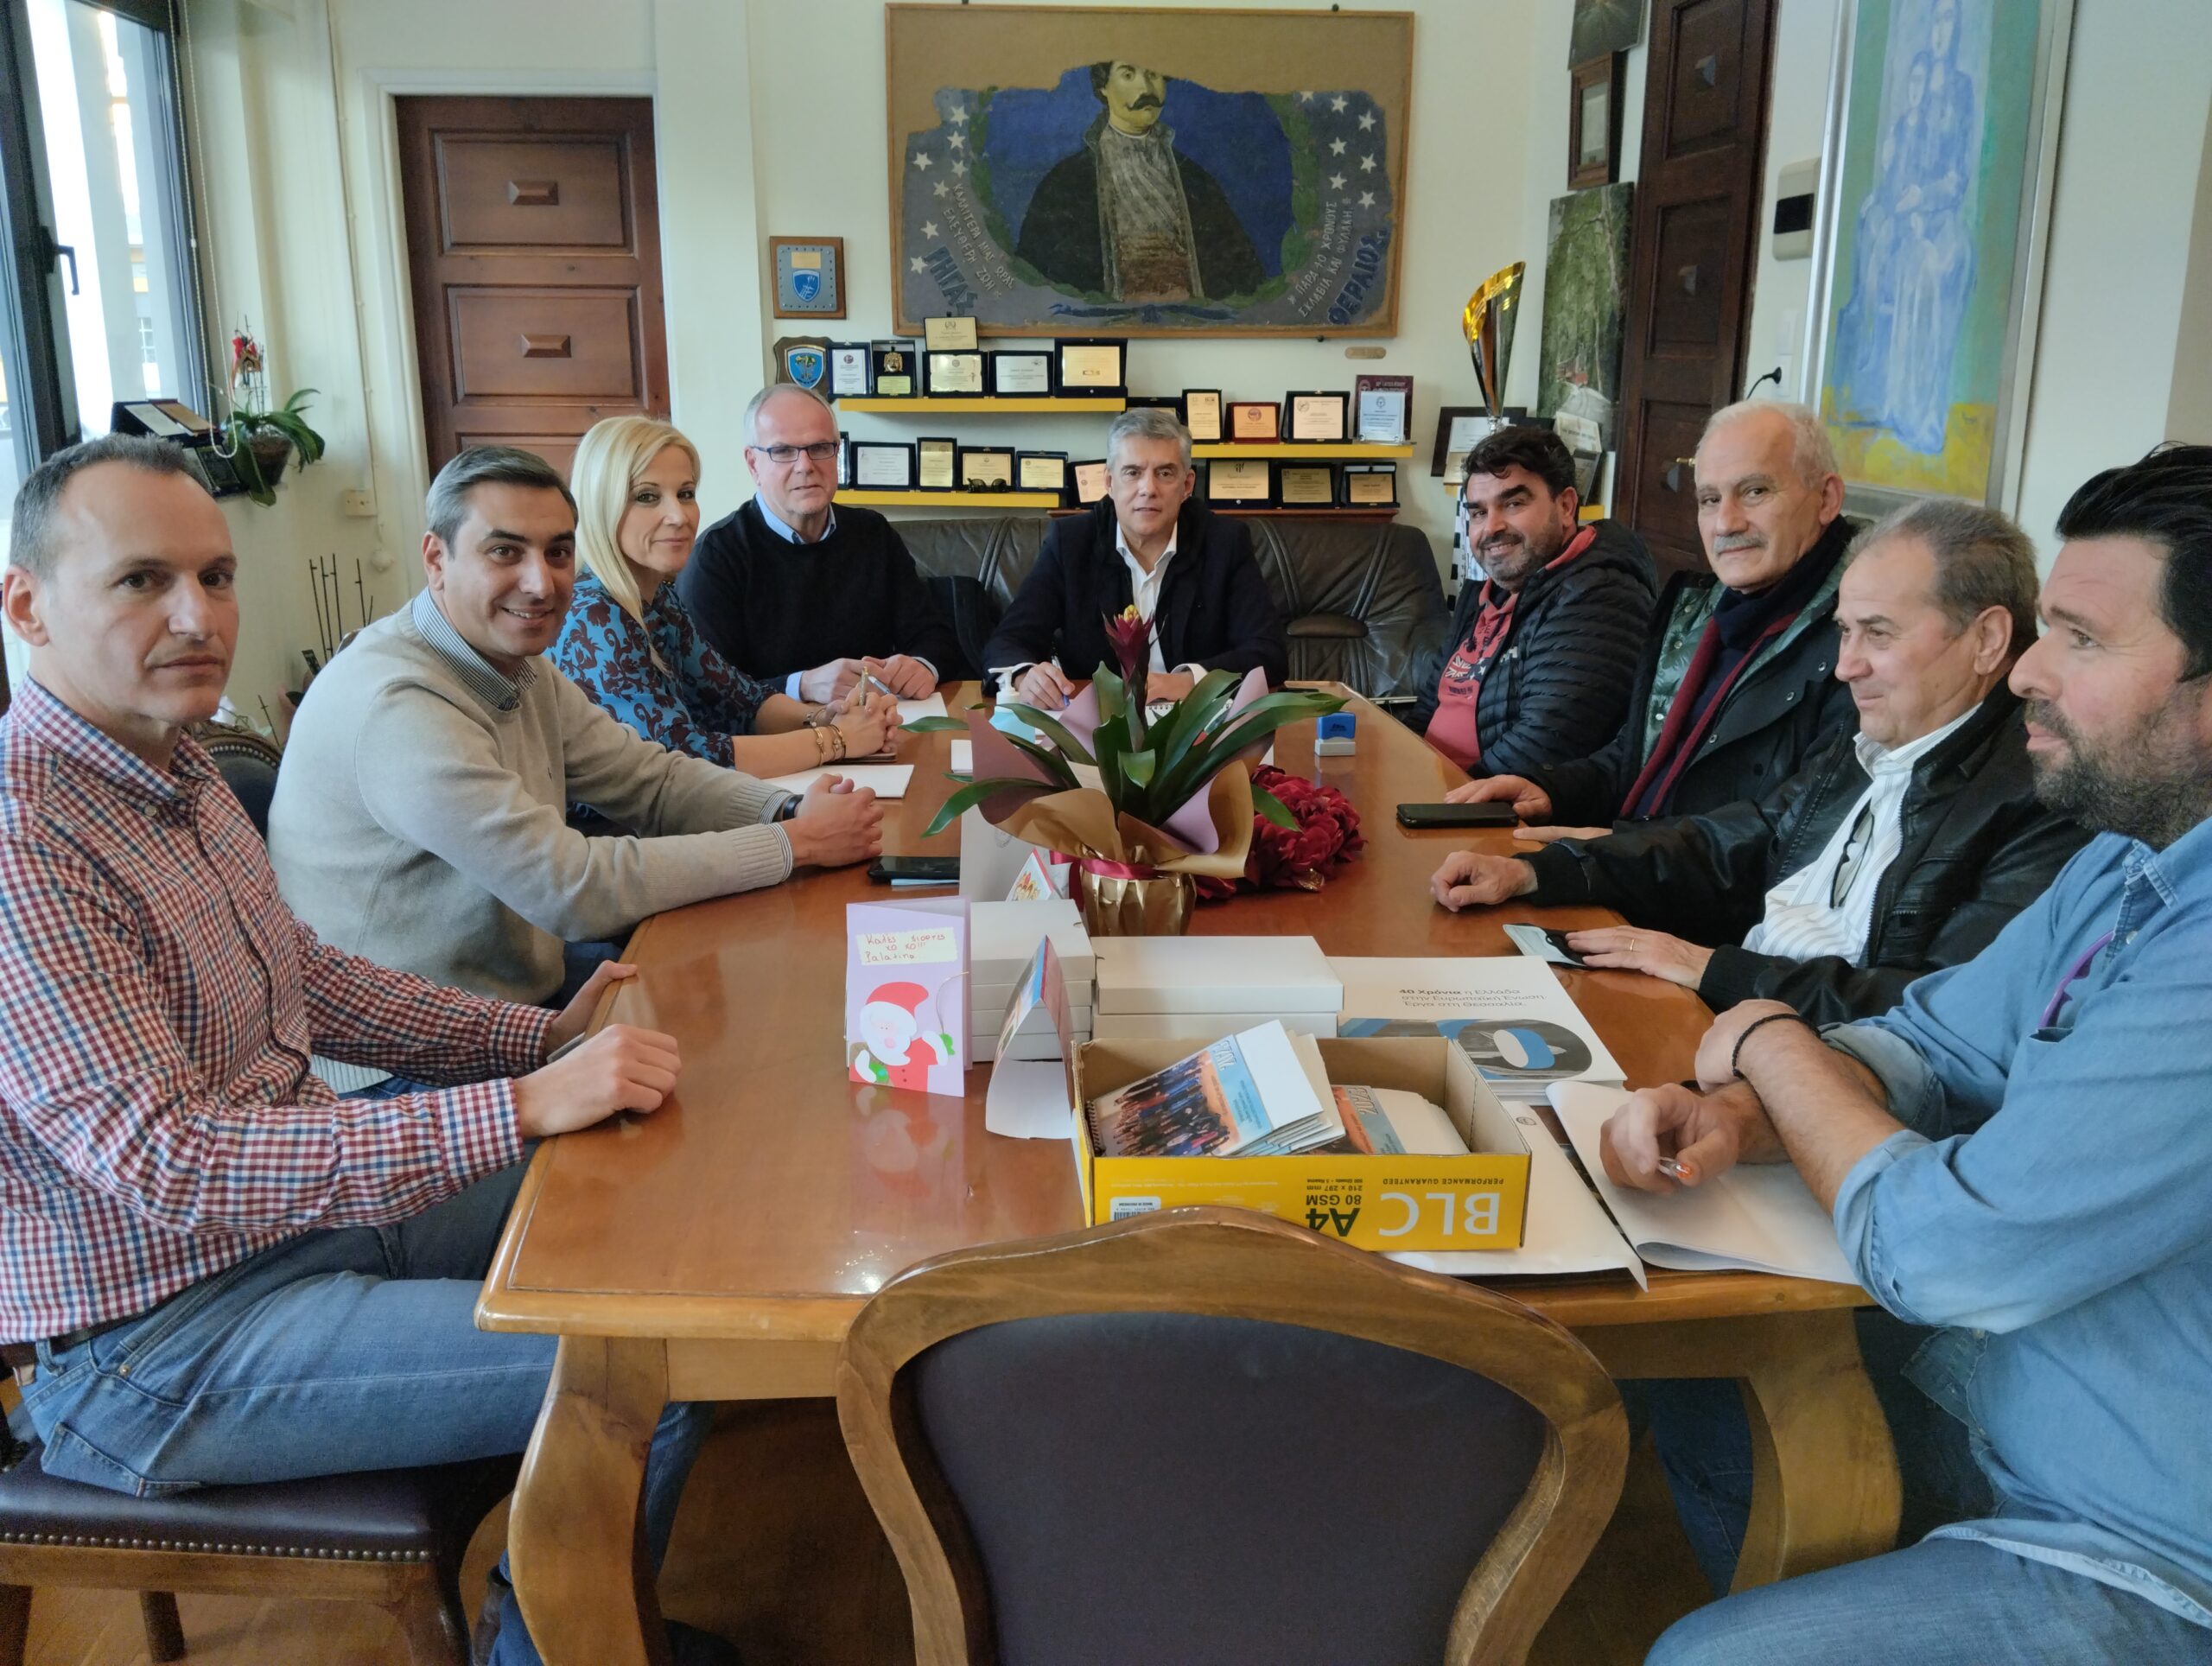 Υπεγράφη η σύμβαση κατασκευής του έργου των κυκλικών κόμβων στον Δήμο Αλμυρού